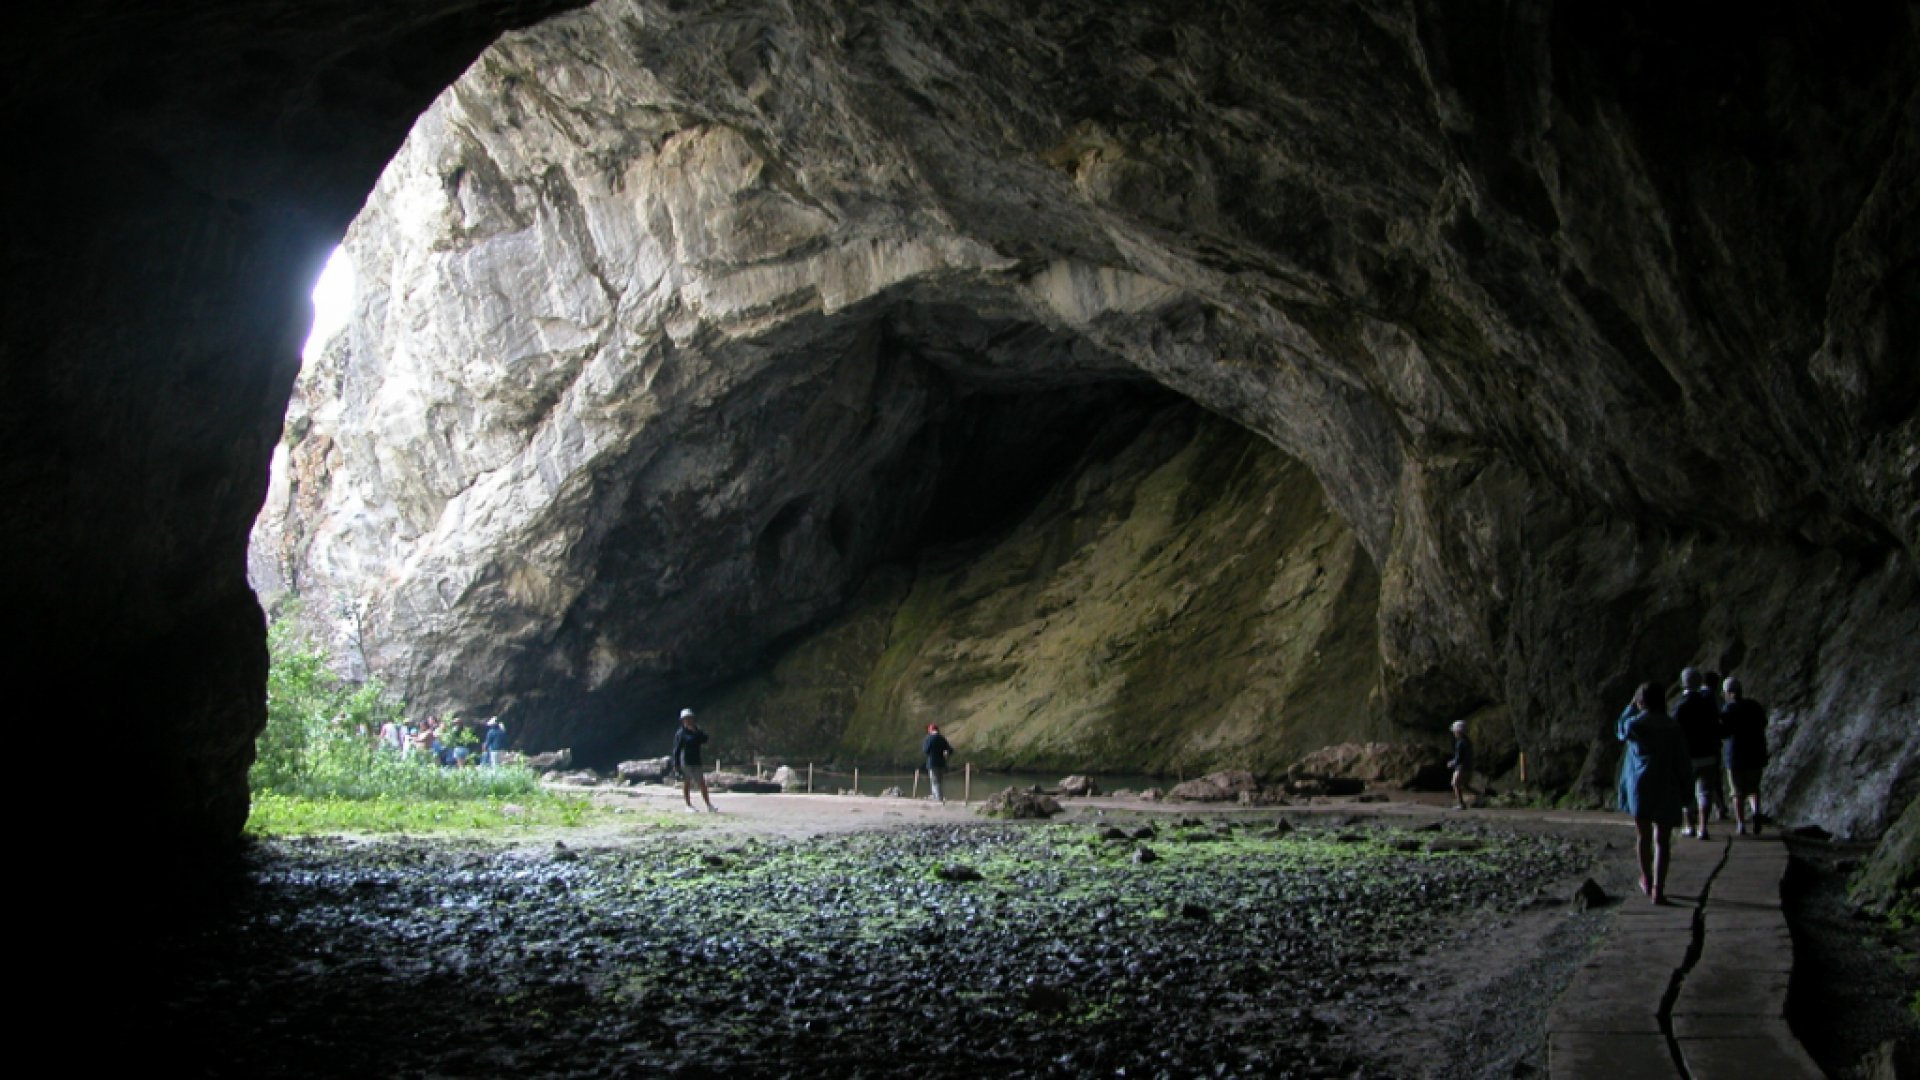 Aza cave. Пещера дукнисцкаро. Одолламская пещера Давида. Пещера горама Гибралтар. Пещера в горах.